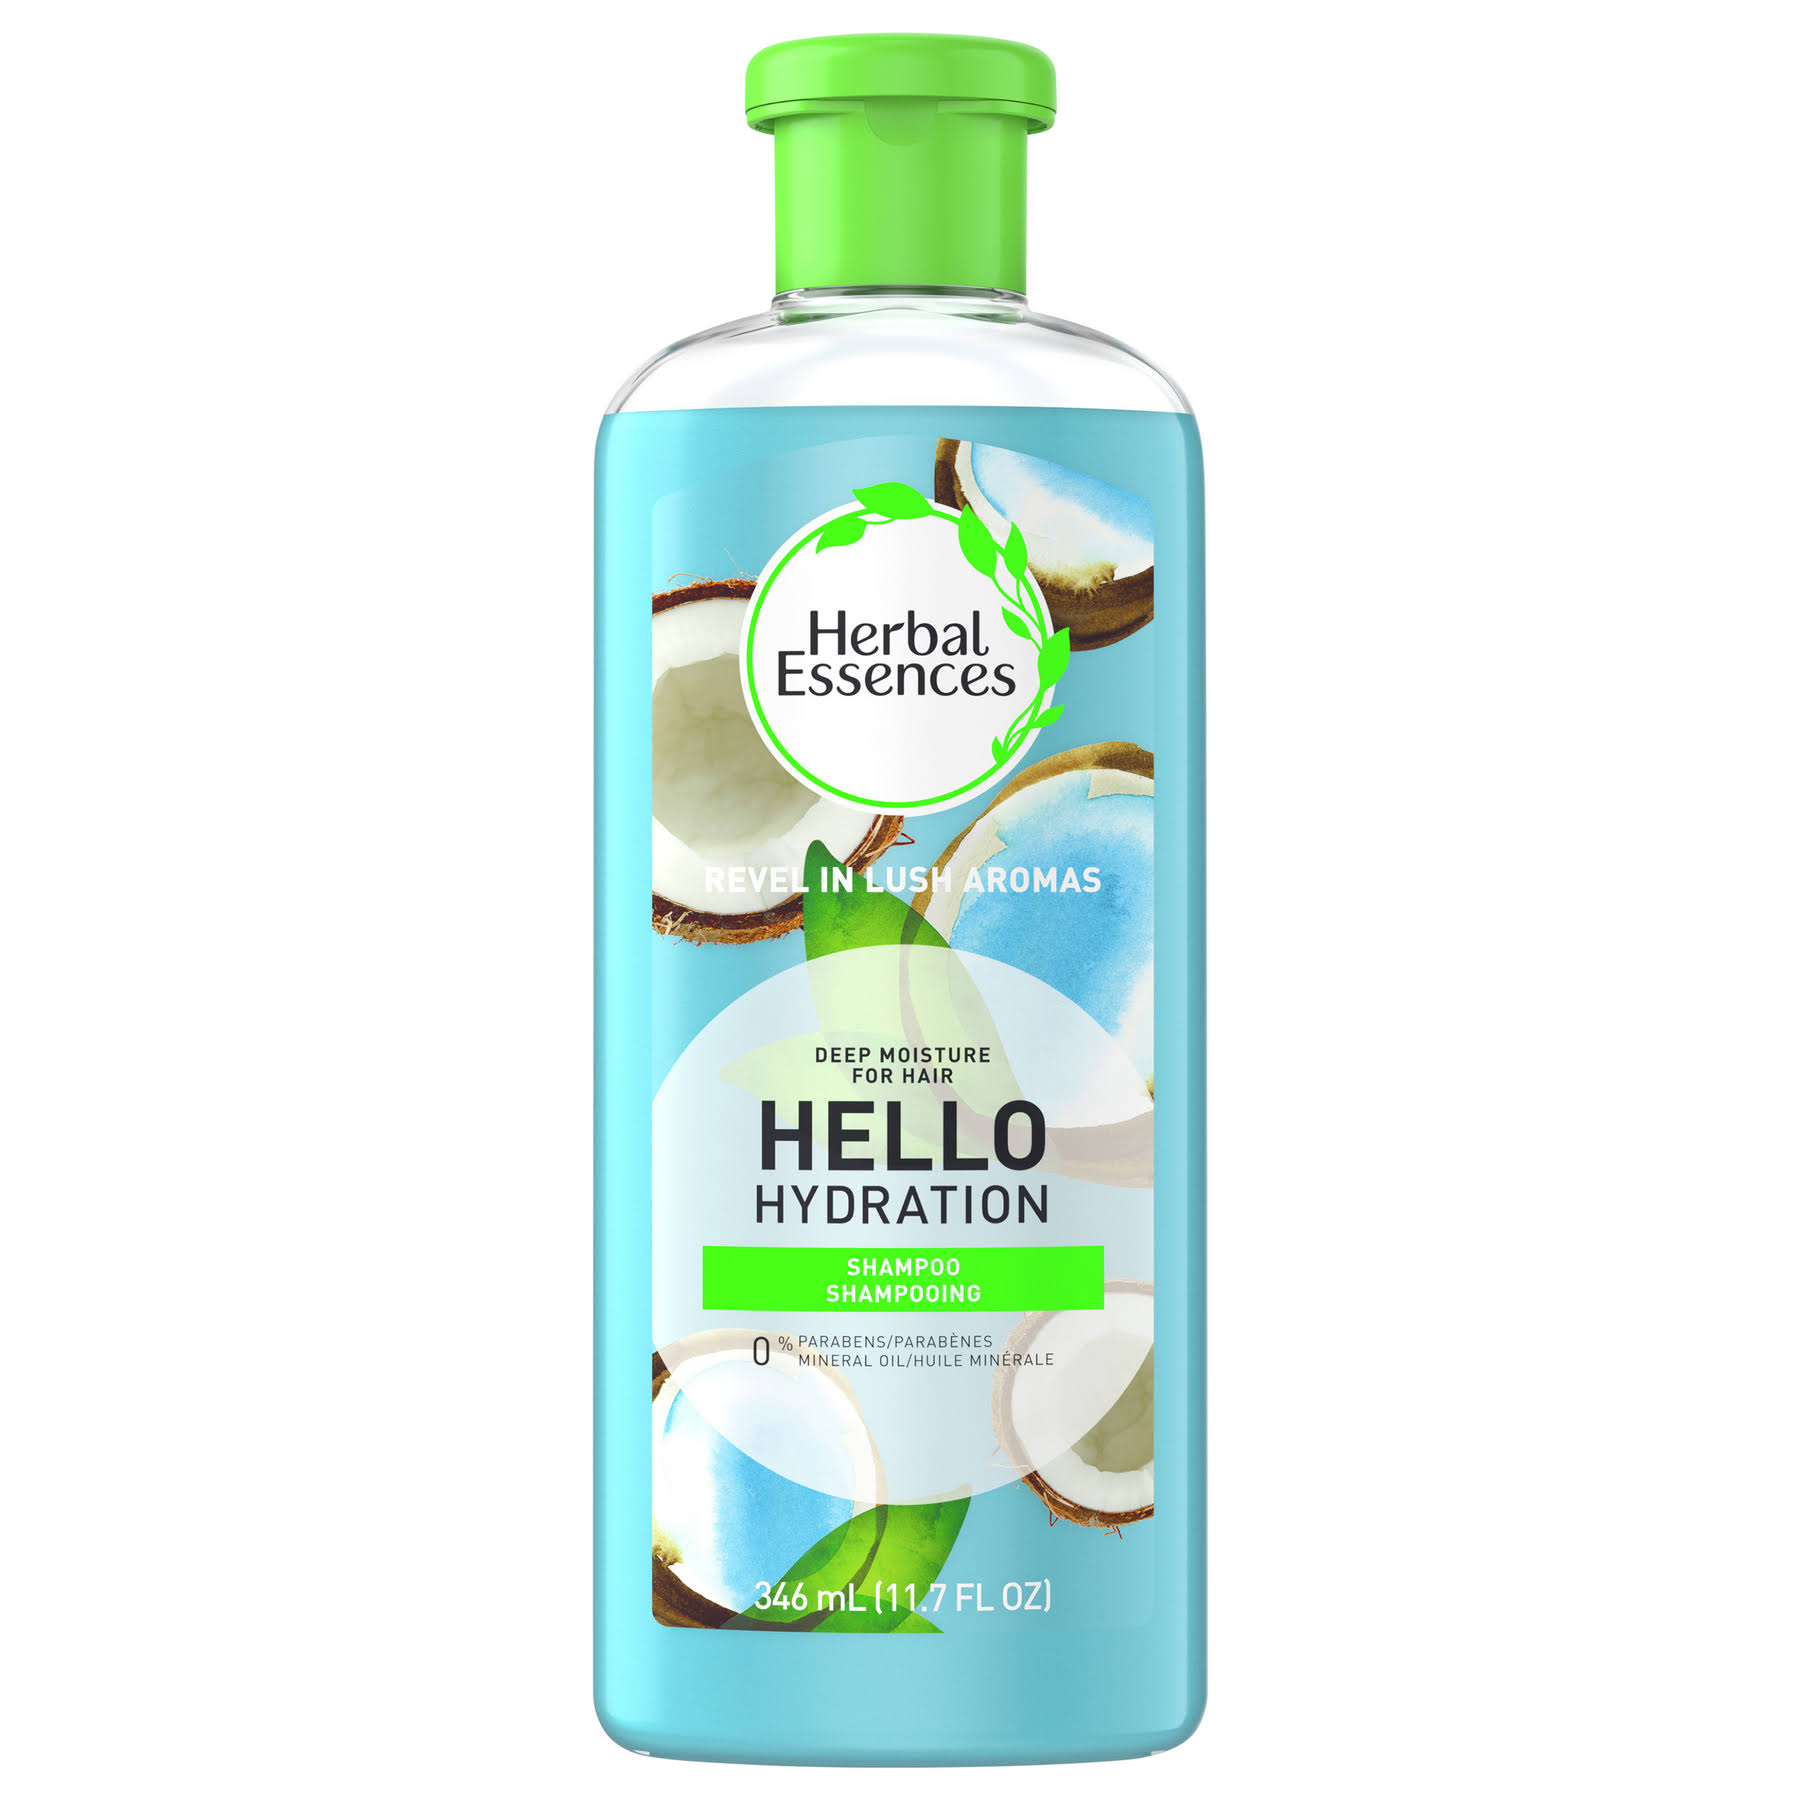 Herbal Essences Hello Hydration Hair & Body Wash - 11.7 fl oz